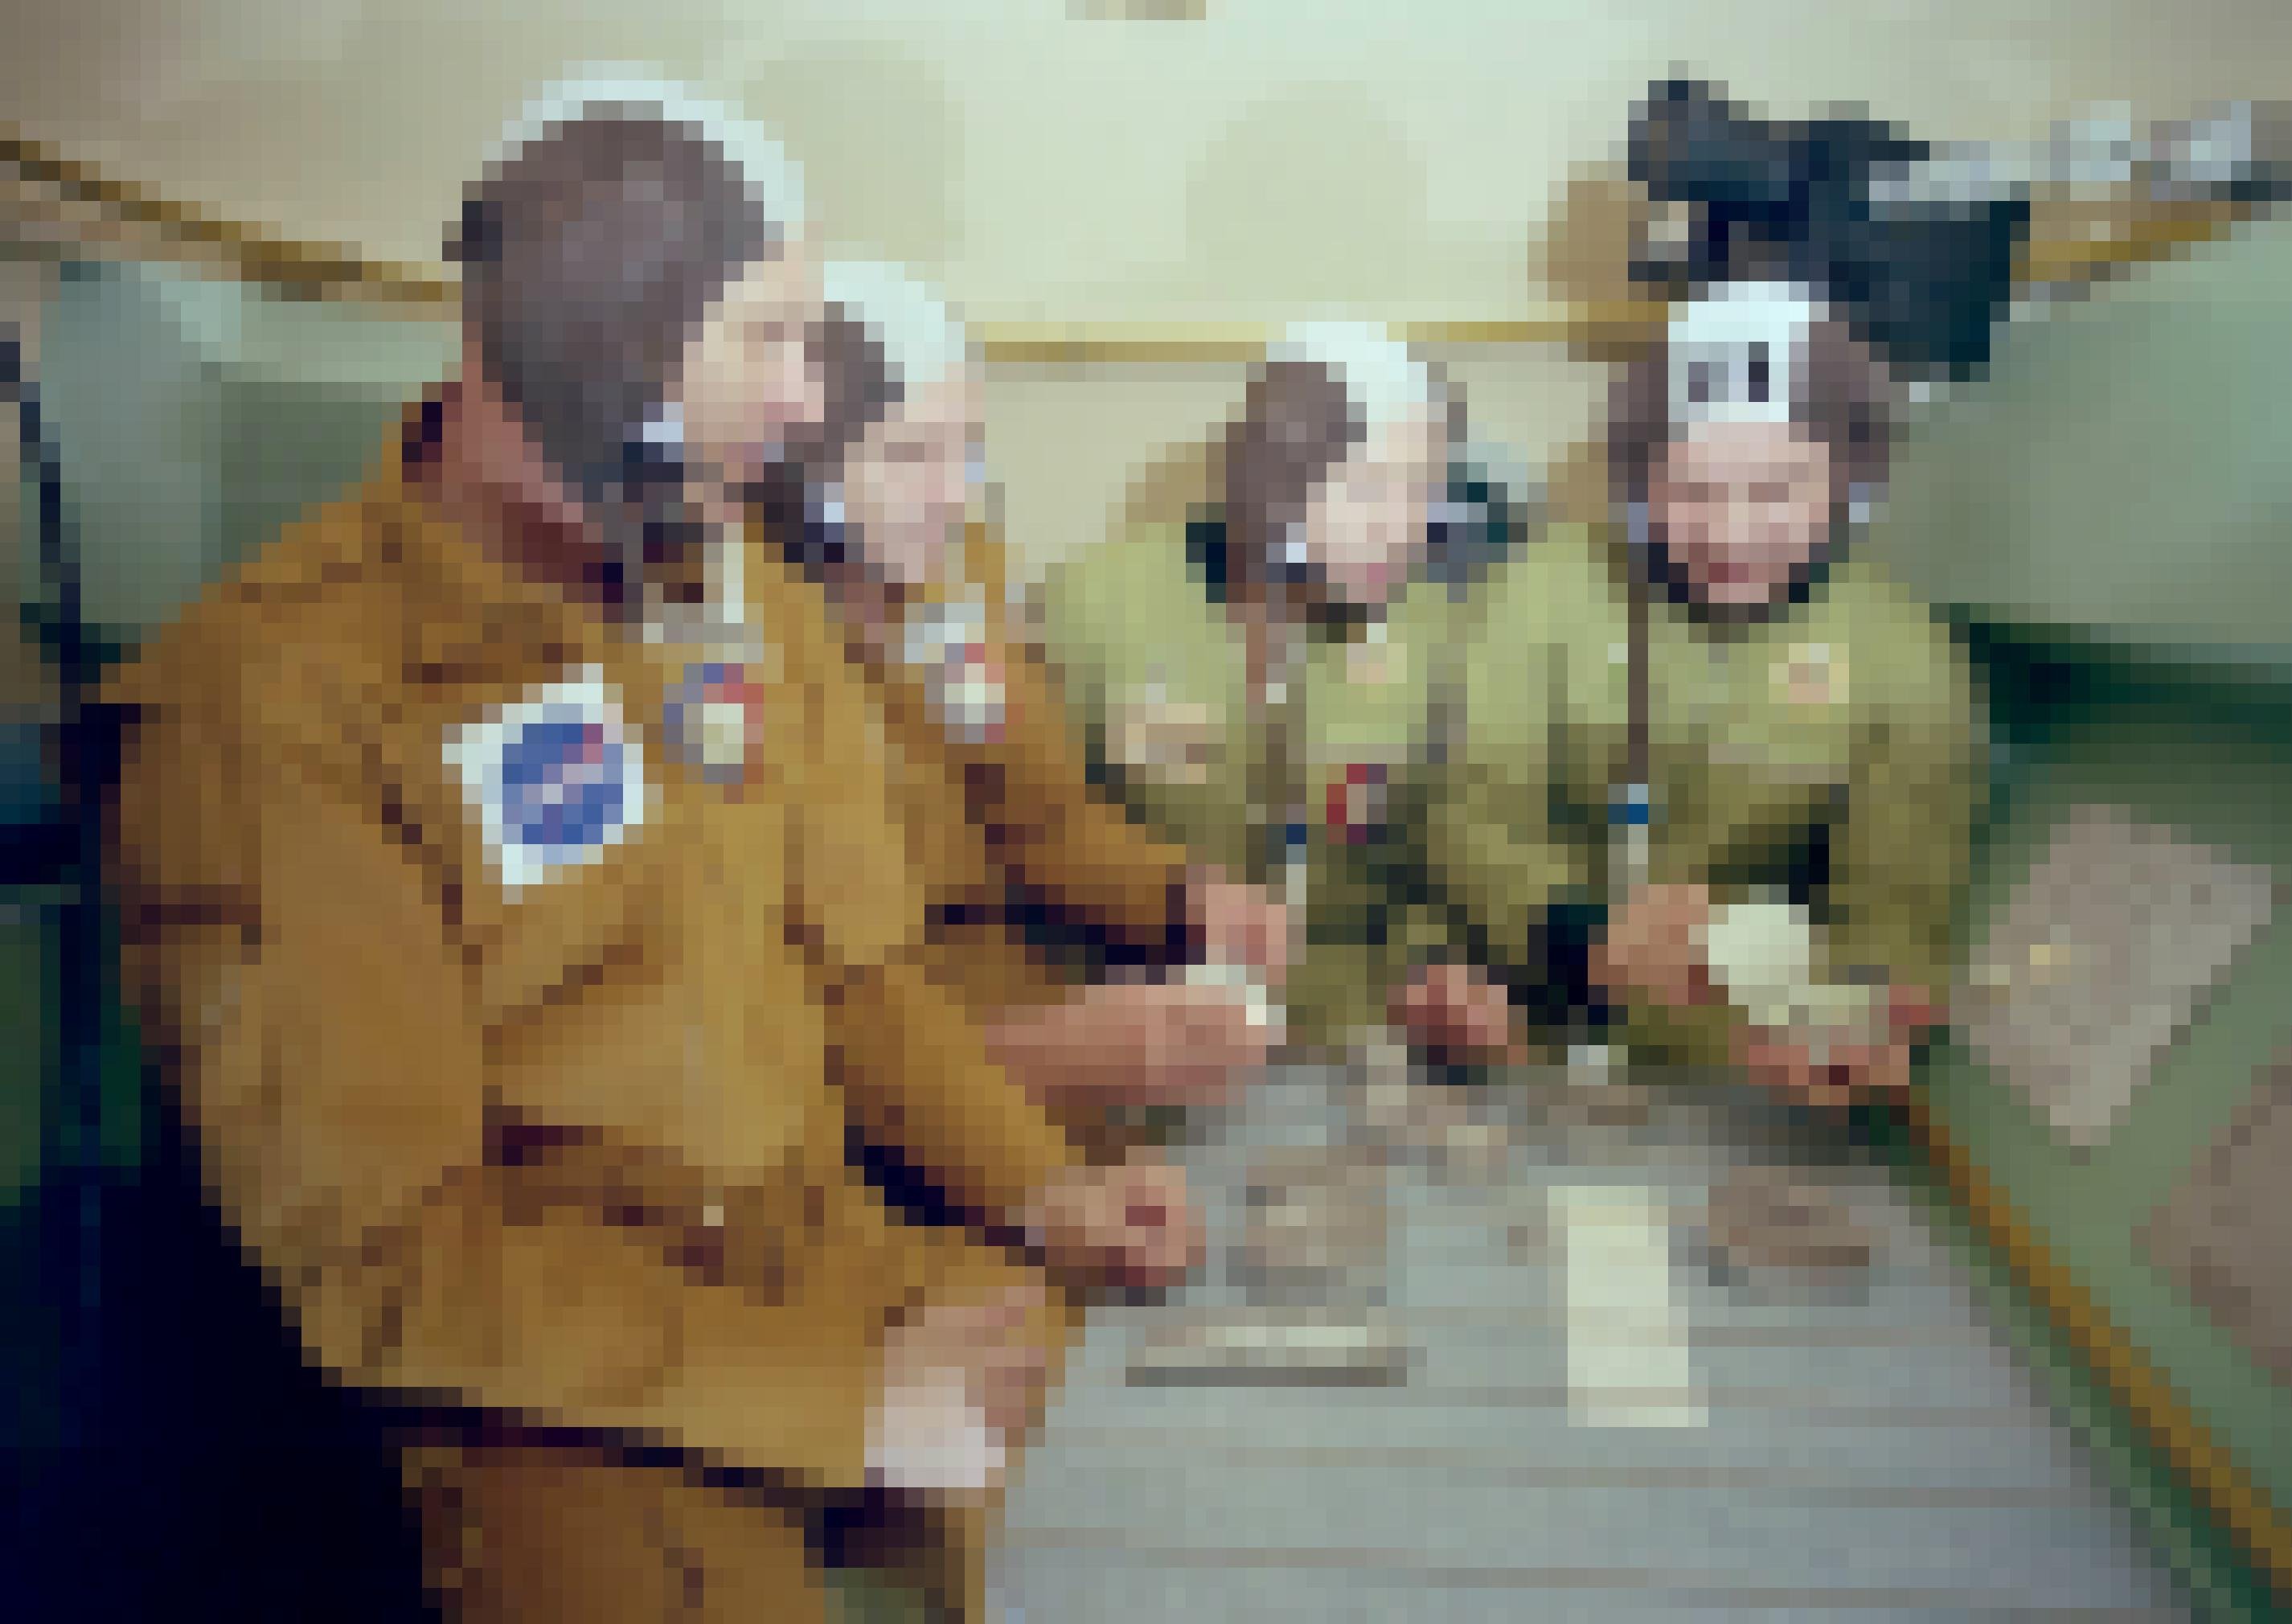 Vier Raumfahrer sitzen gemeinsam am Tisch und betrachten Dosennahrung. Die US-Astronauten tragen braune Anzüge, die sowjetischen Kosmonauten sind kakifarben. Alle tragen identisch aussehende Hauben.